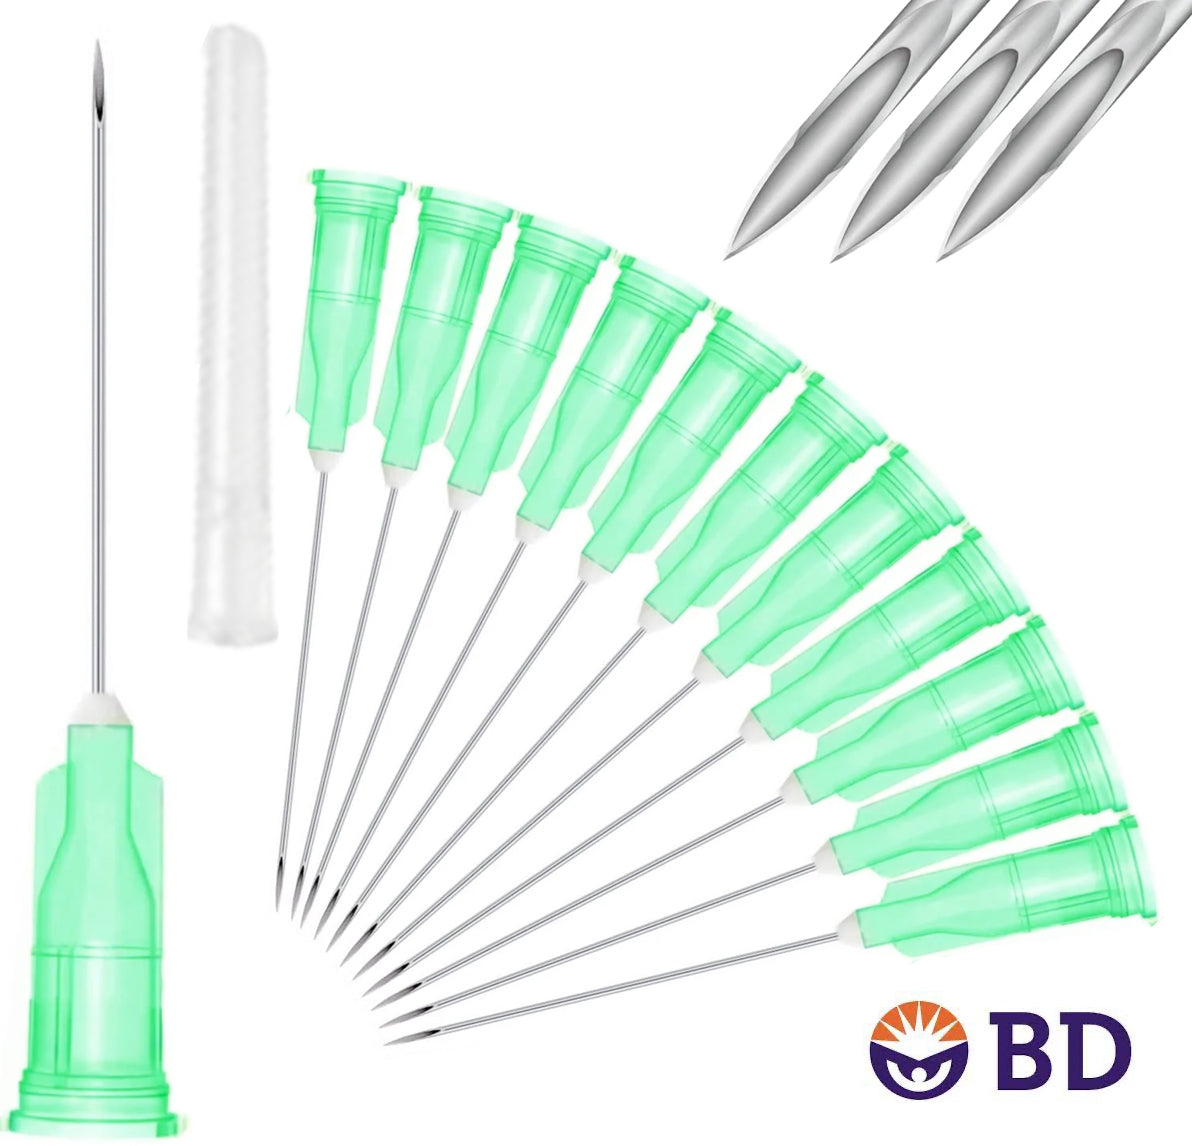 BD 21G x 1" Medical Needle (10pk)